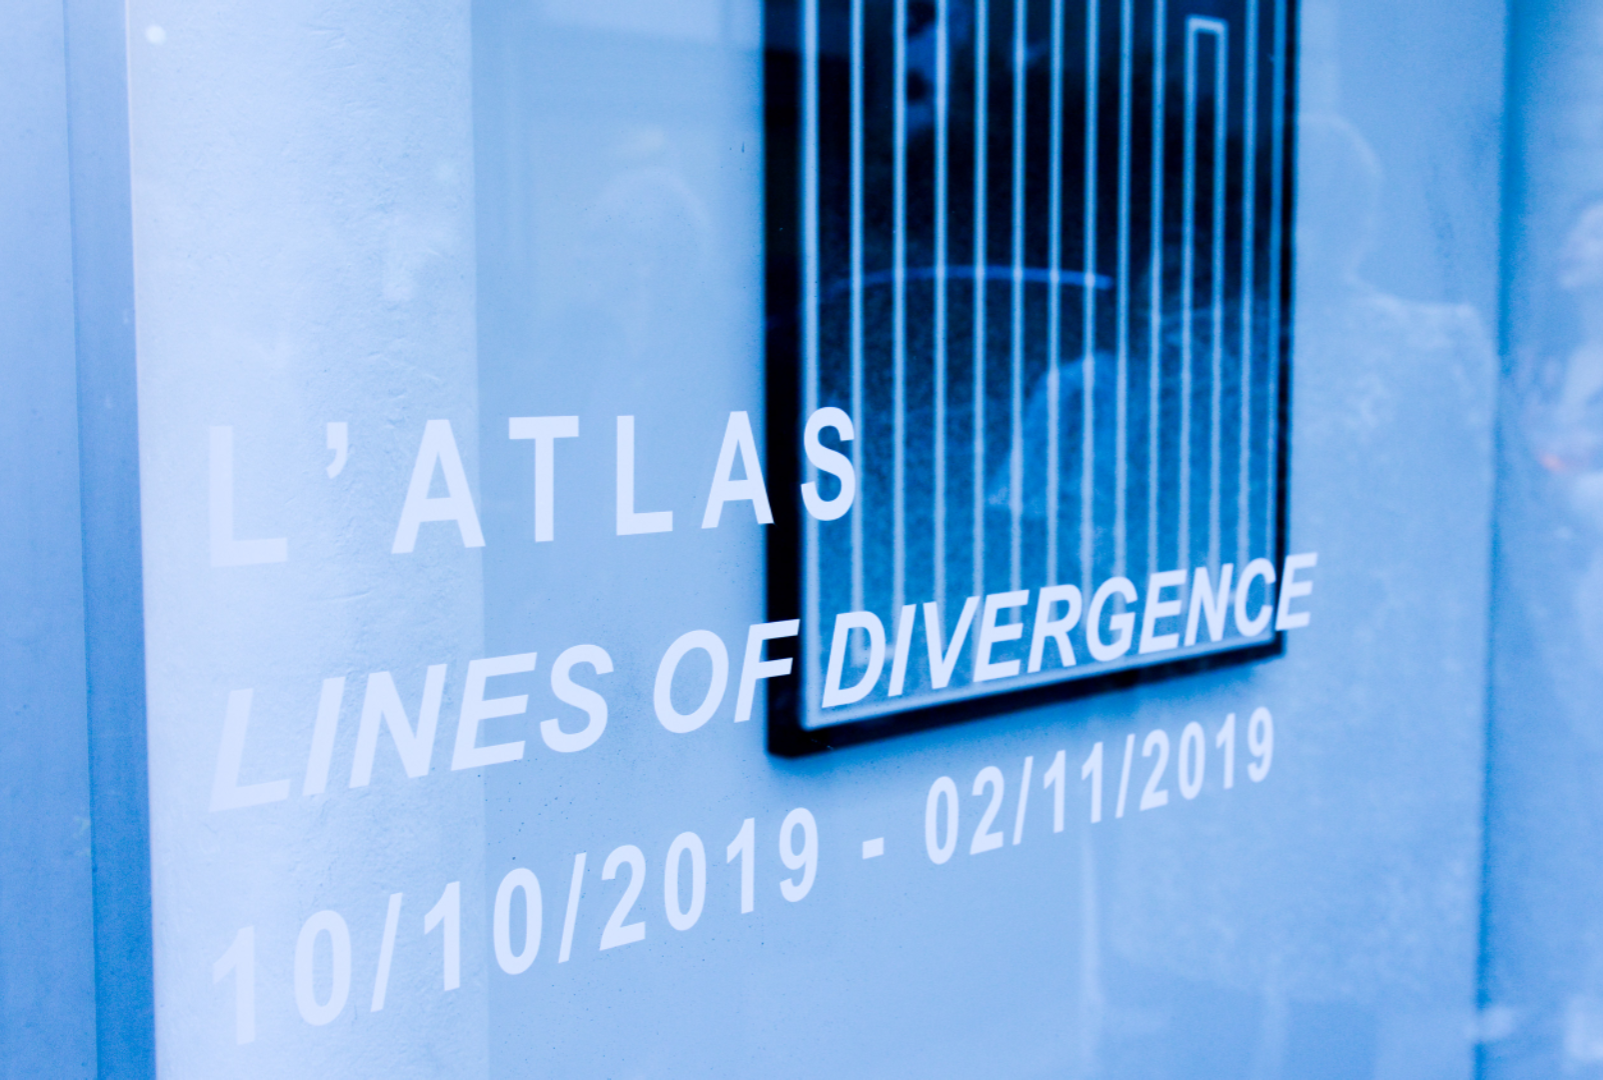 LATAL "Lines of Divergence" jusqu au 2 Novembre chez Brugier Rigail au 40 rue Volta